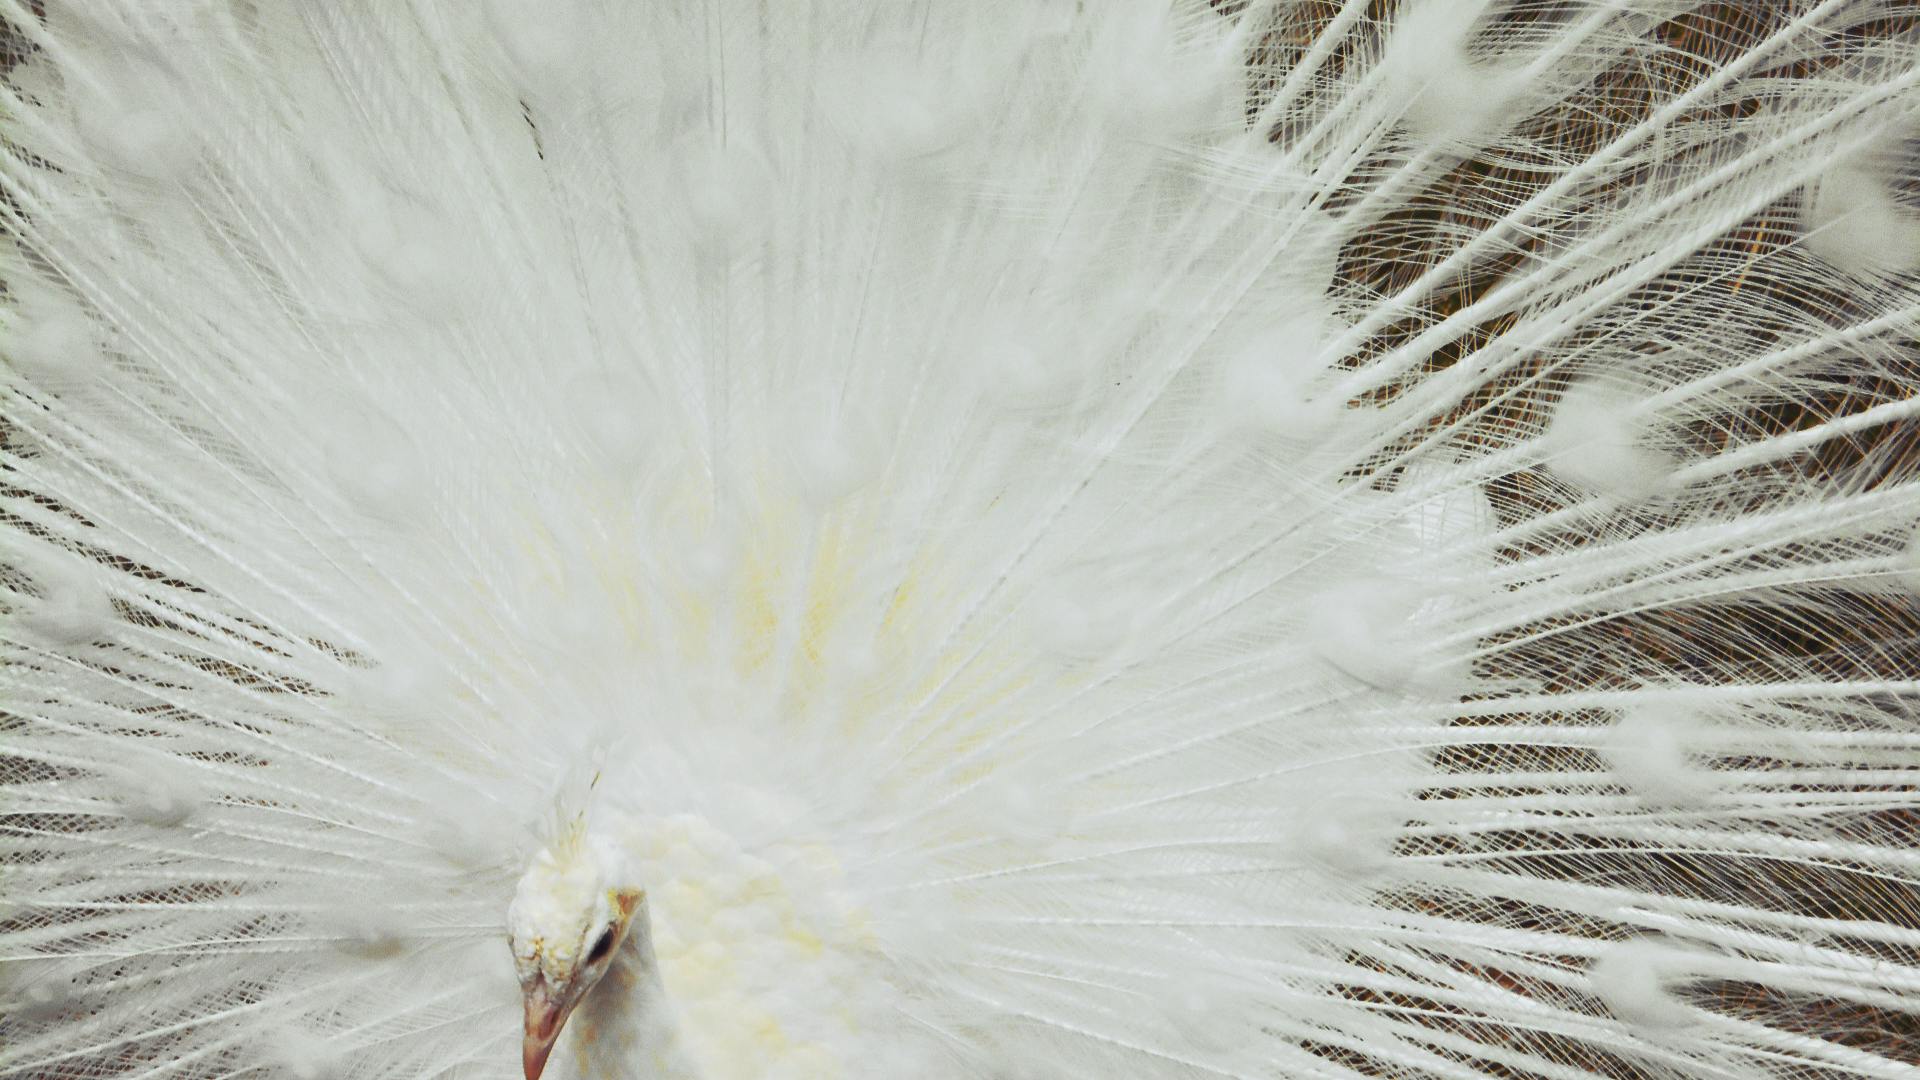 Free stock photo of white peacock